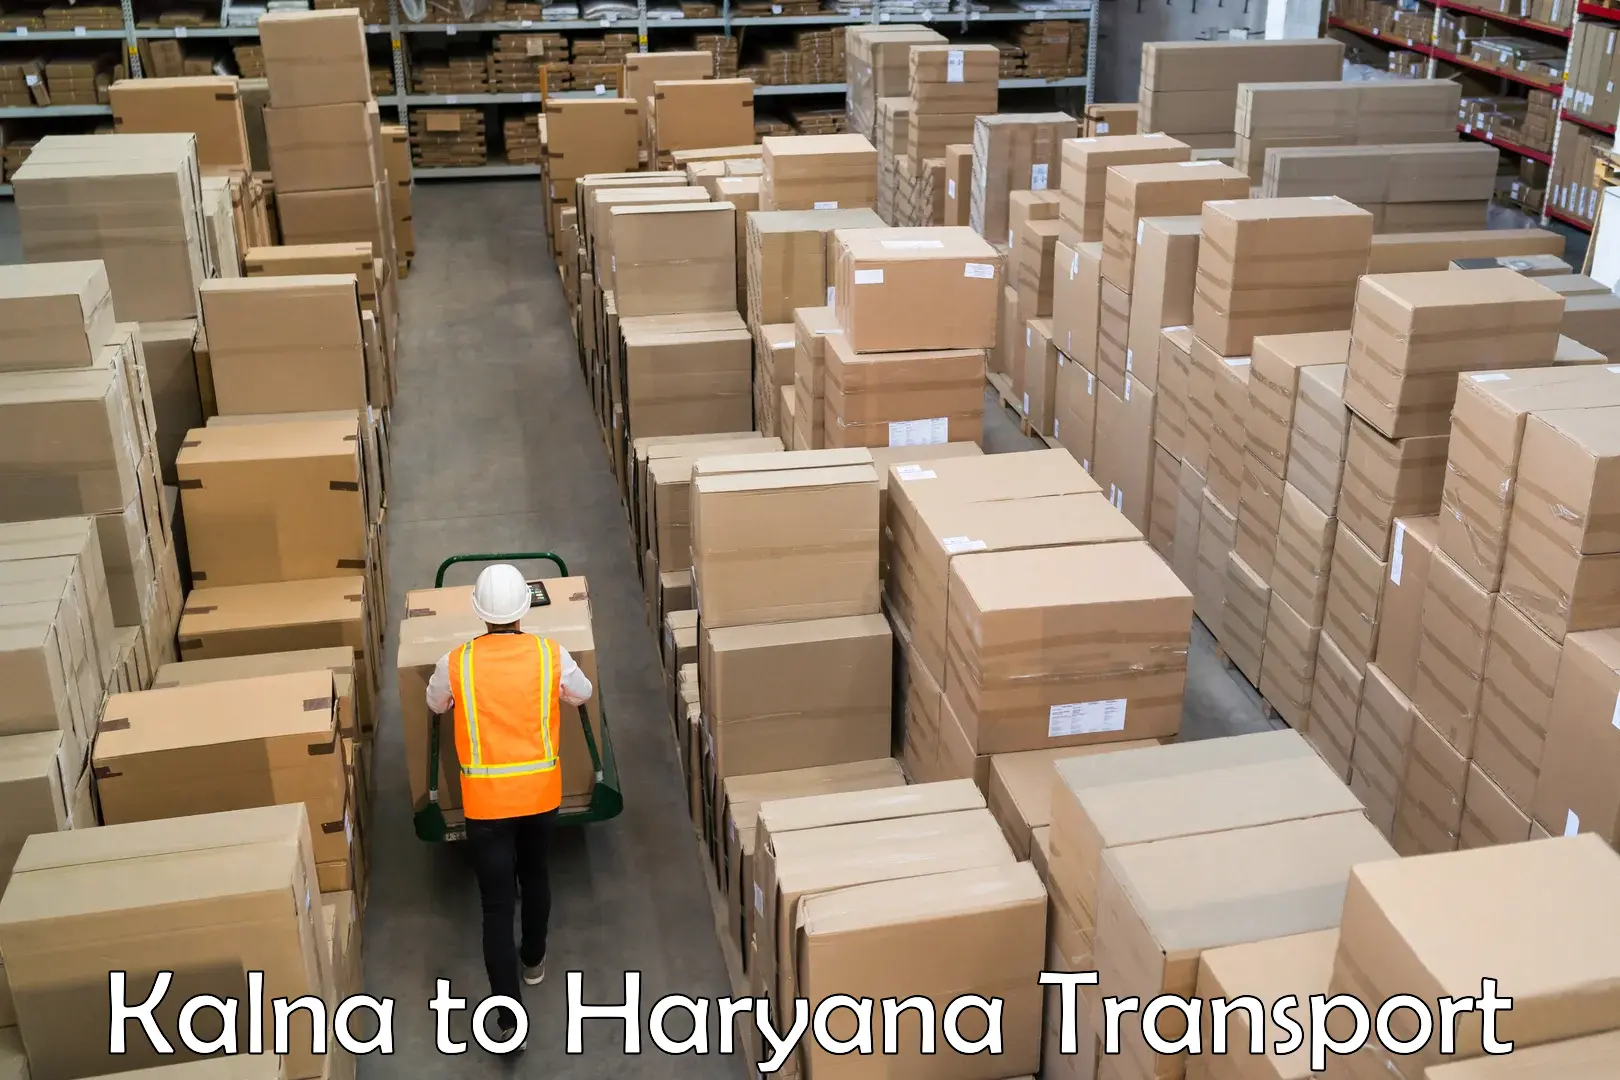 Shipping partner in Kalna to NCR Haryana